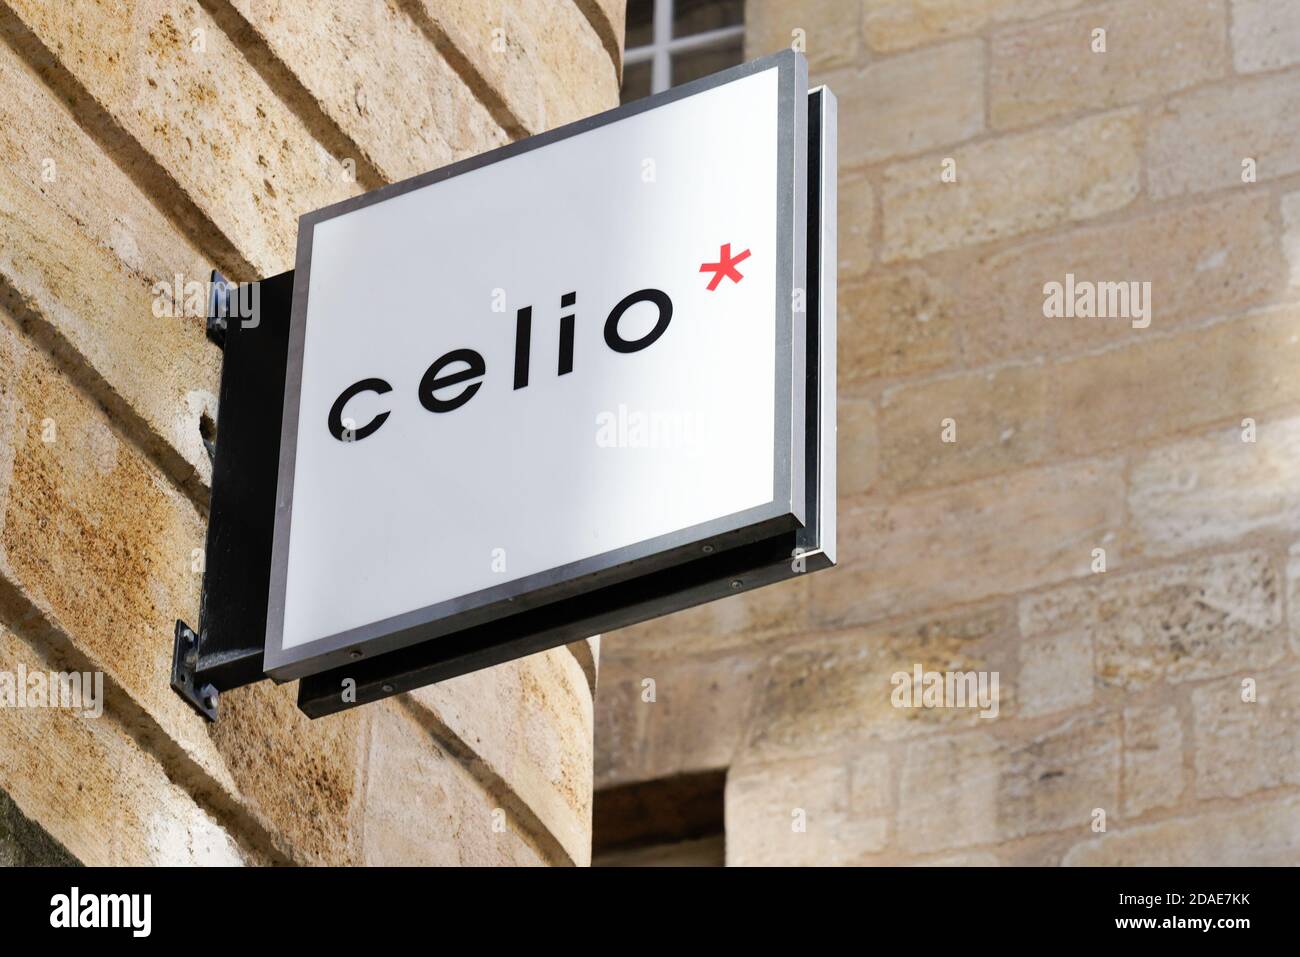 Bordeaux , Aquitaine / France - 11 01 2020 : affiche celio texte et croix  logo avant de magasin de vêtements pour hommes boutique de mode Photo Stock  - Alamy